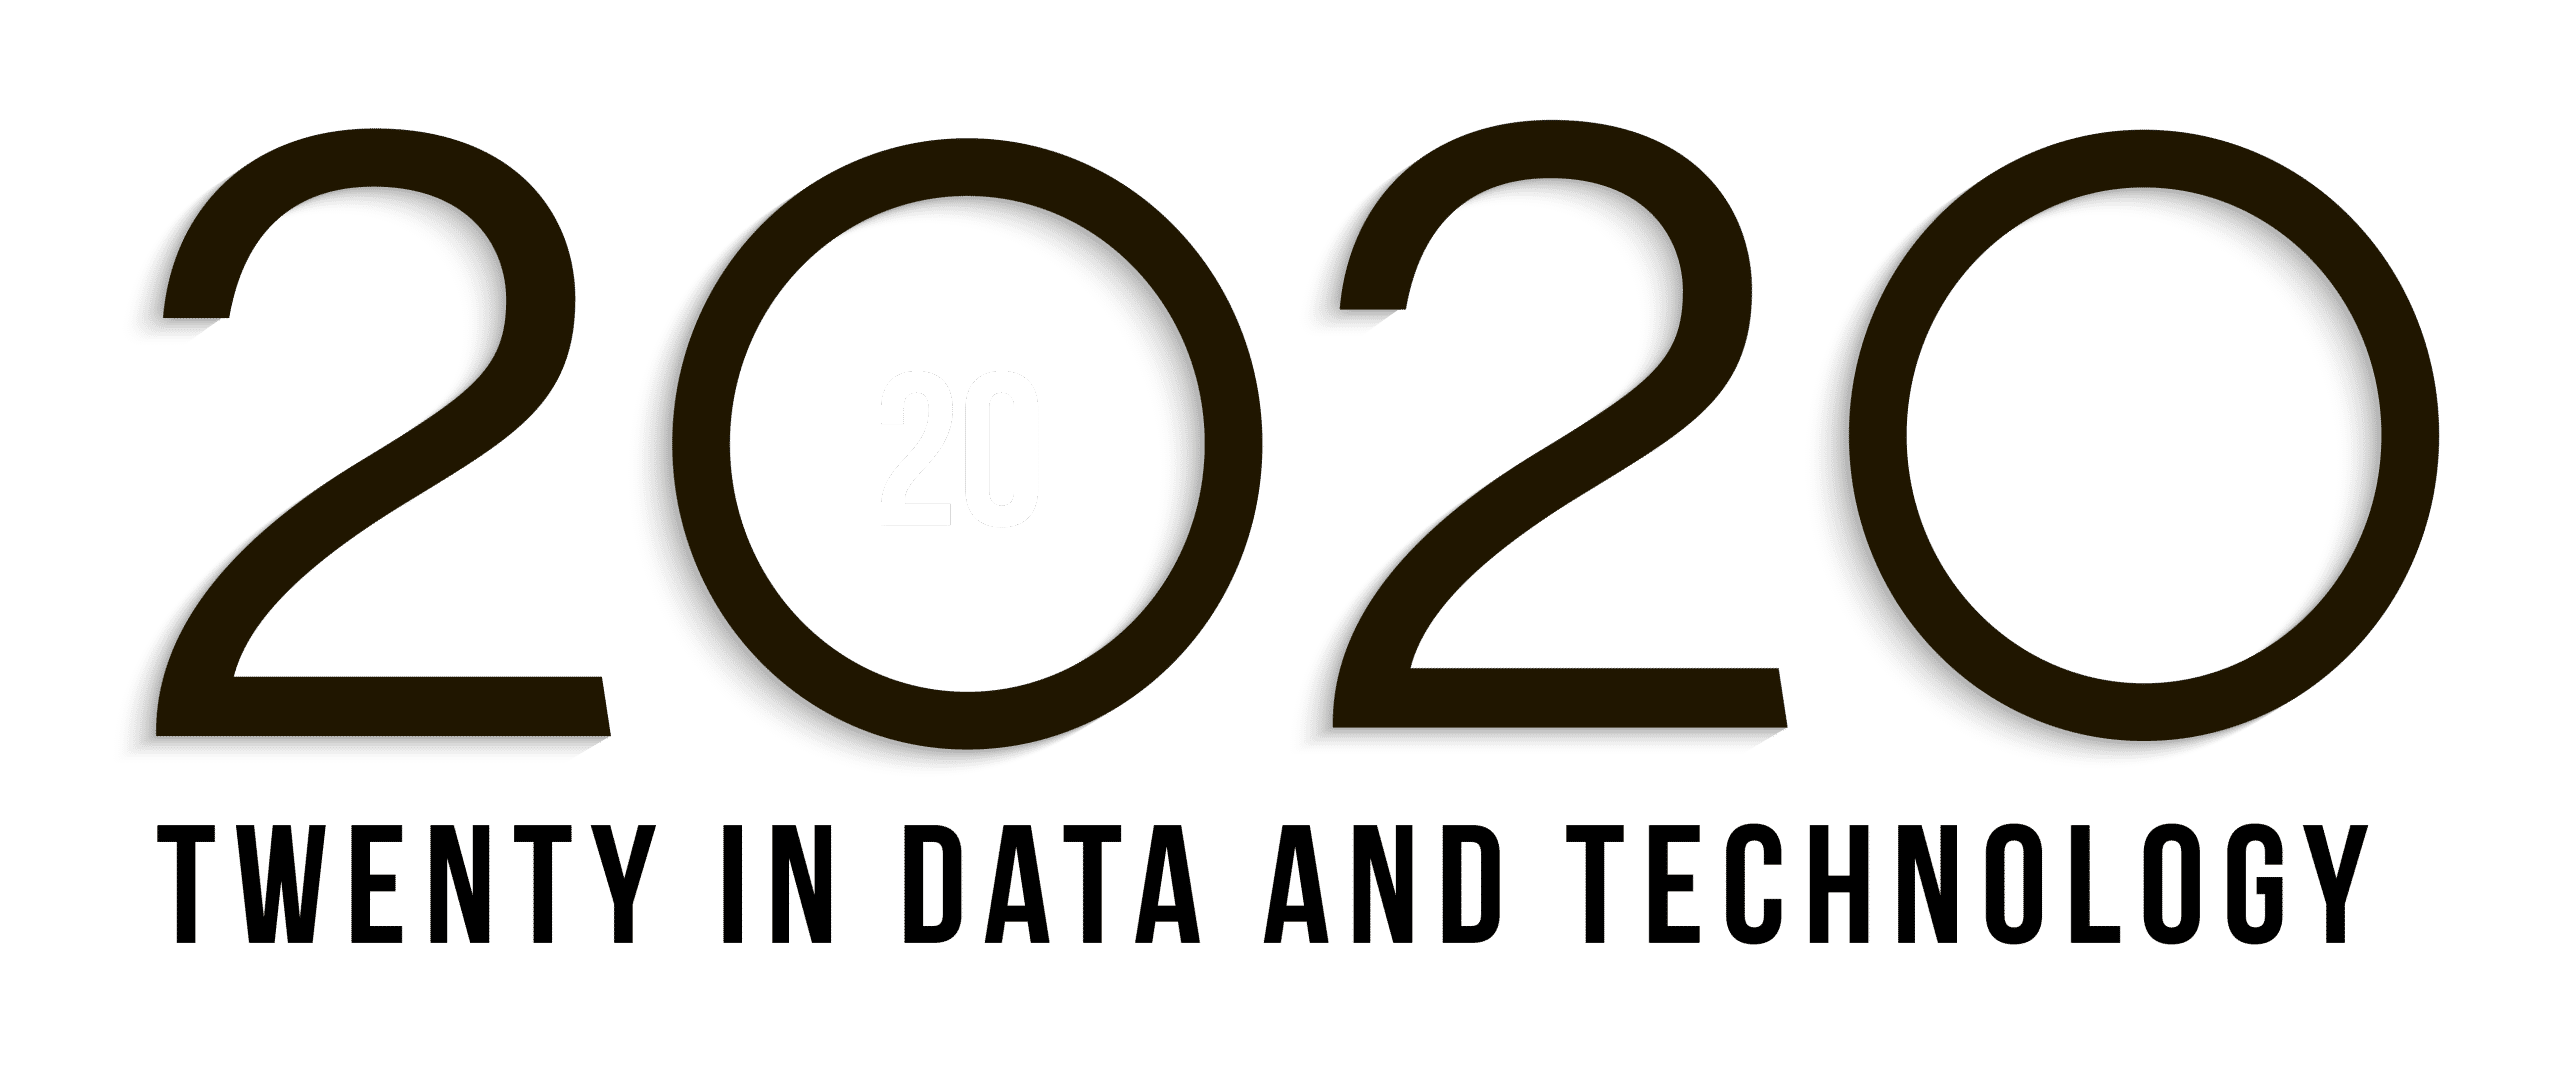 20 in 2020